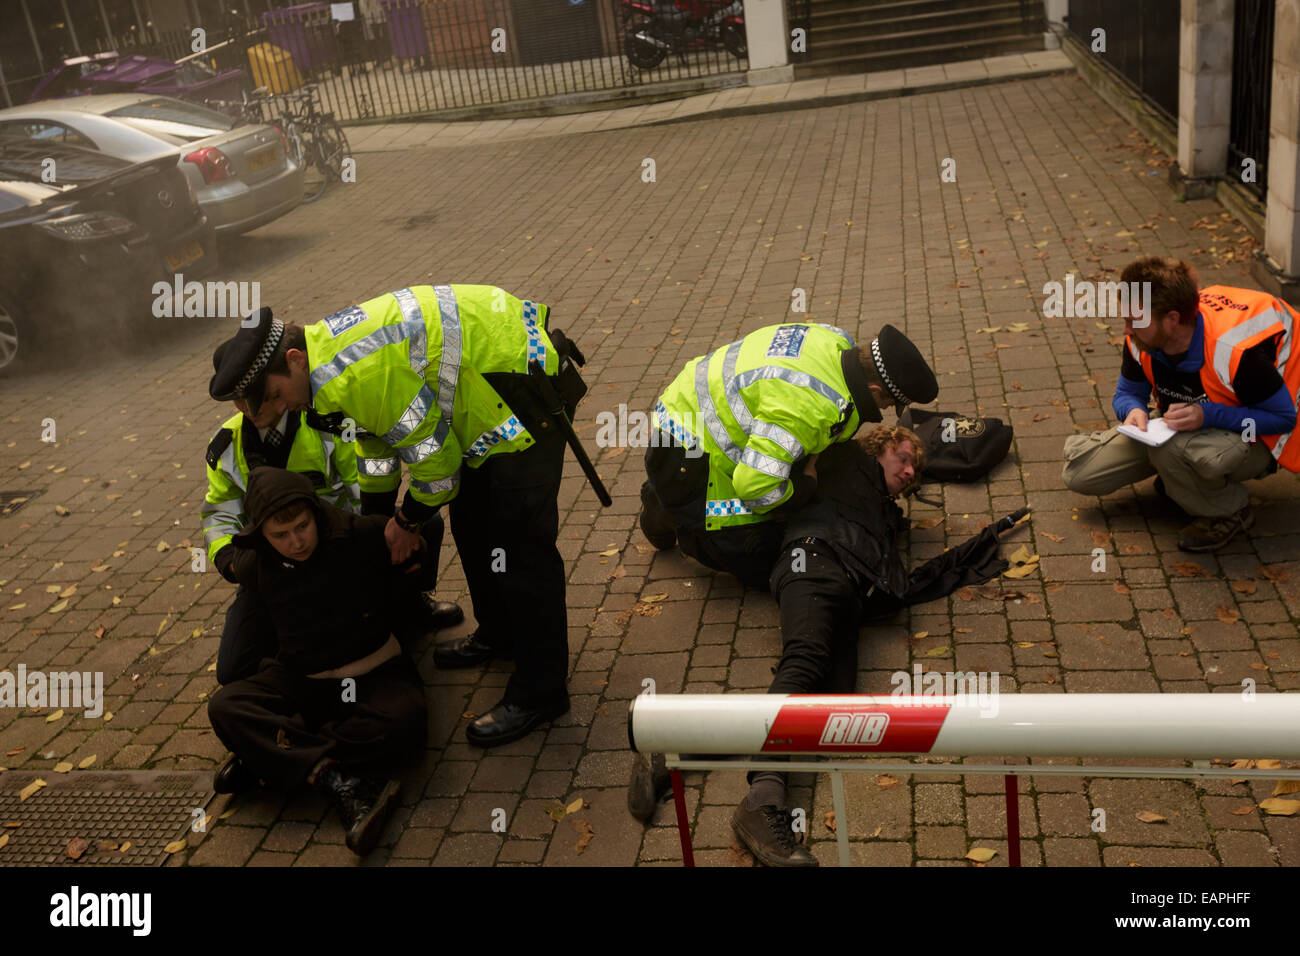 Londres, Royaume-Uni. 19 novembre, 2014. 2 manifestants arrêtés par la police pour avoir tenté d'agents de ram avec des bacs. Credit : Lewis Inman/Alamy Live News Banque D'Images